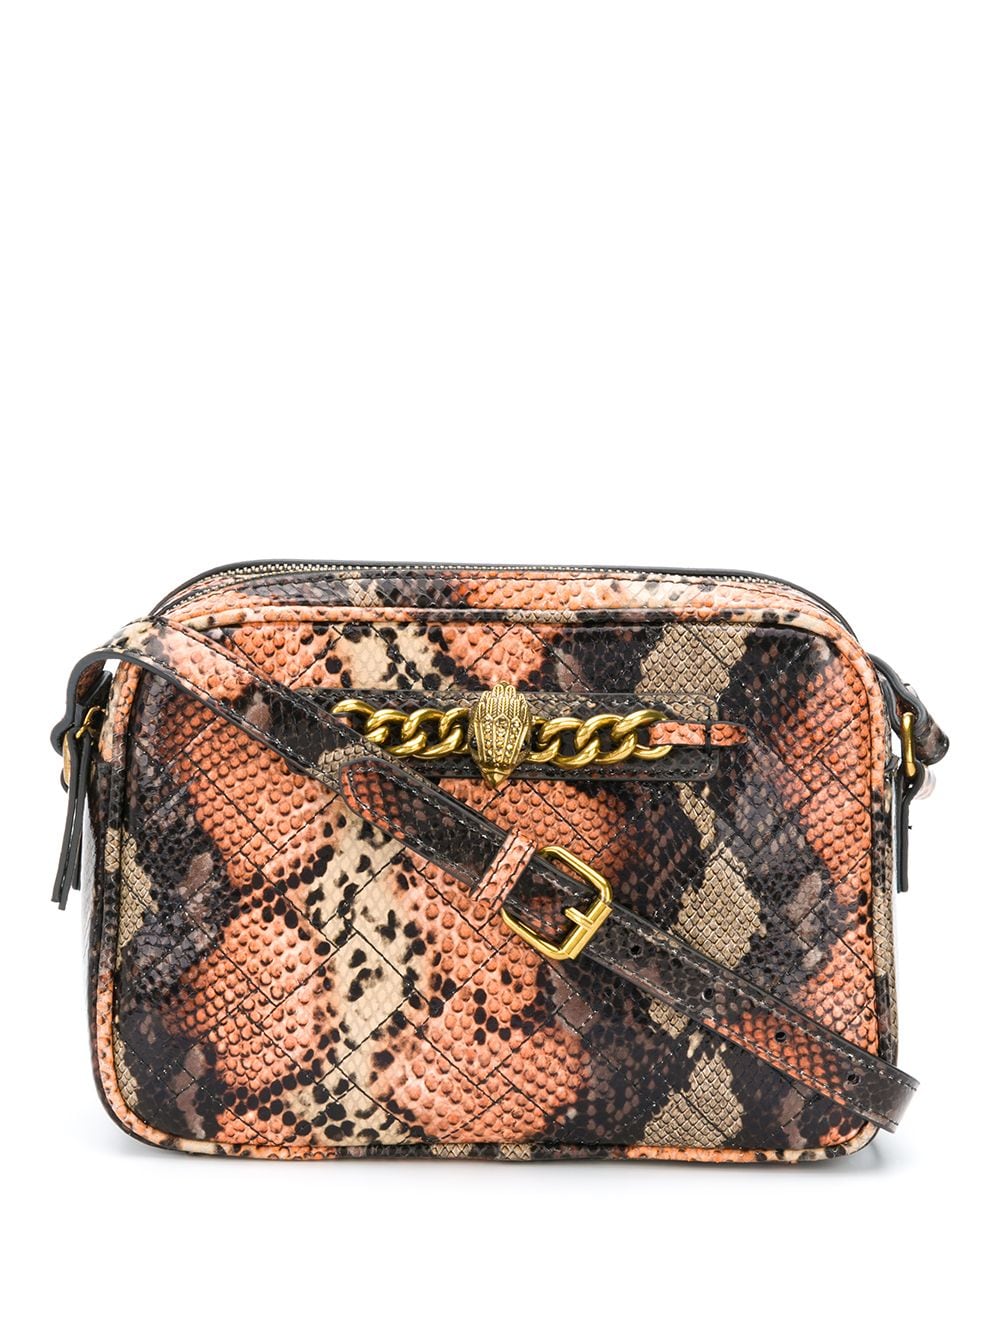 фото Kurt geiger london сумка через плечо chelsea со змеиным принтом